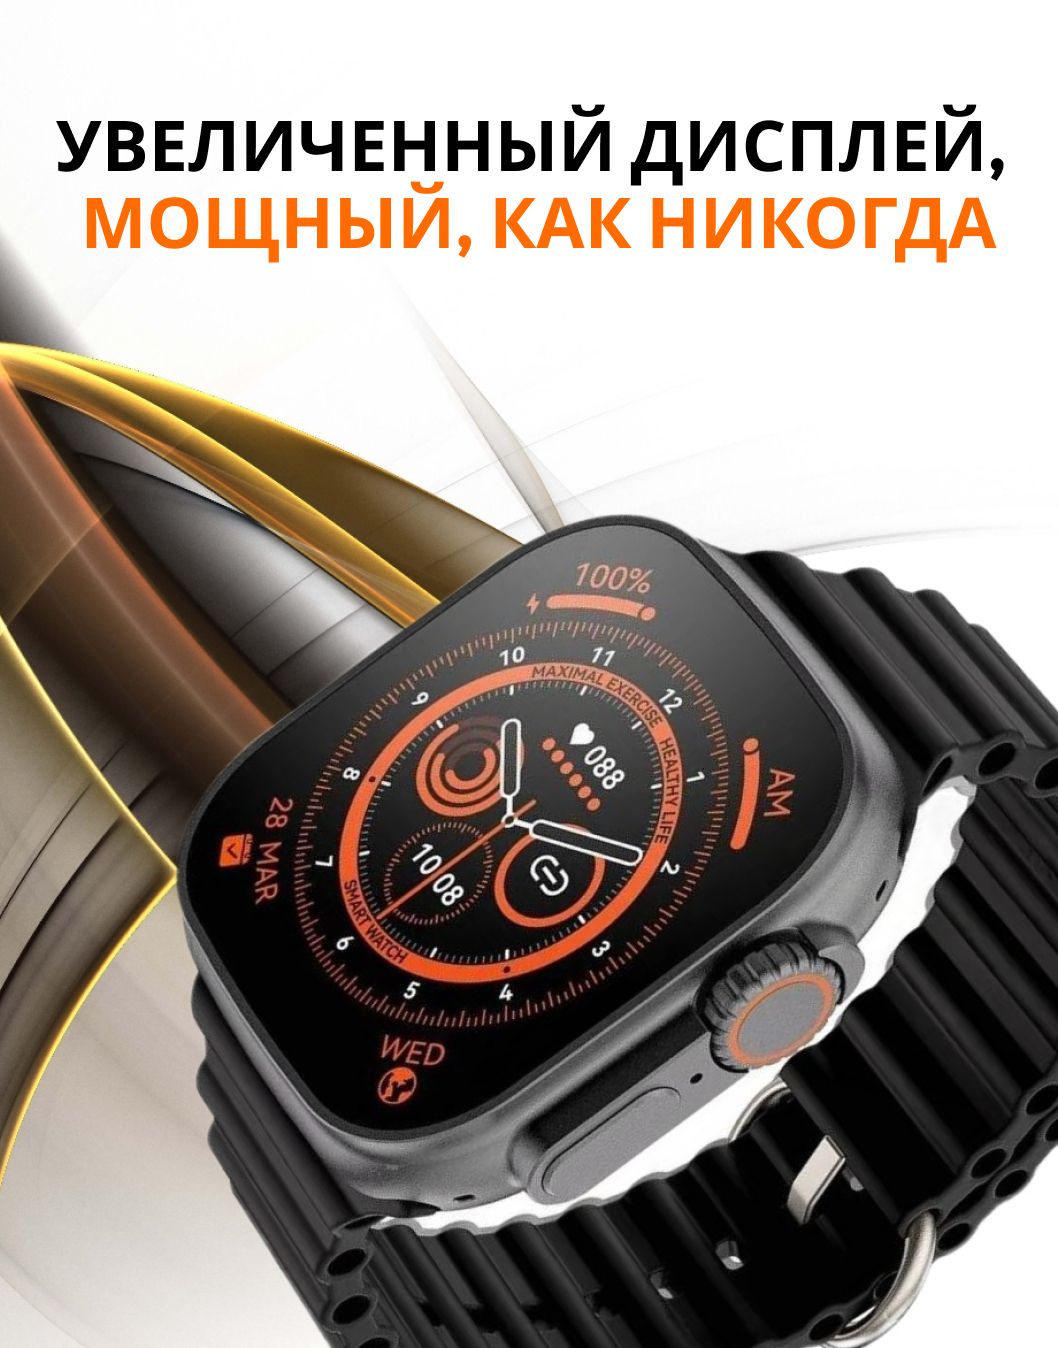 Часы z9 pro. Смарт часы ультра GS Ultra 8. GS 8 Ultra часы. Часы wantach 8 ультра. Умные часы Техно Роял x8 ультра-.